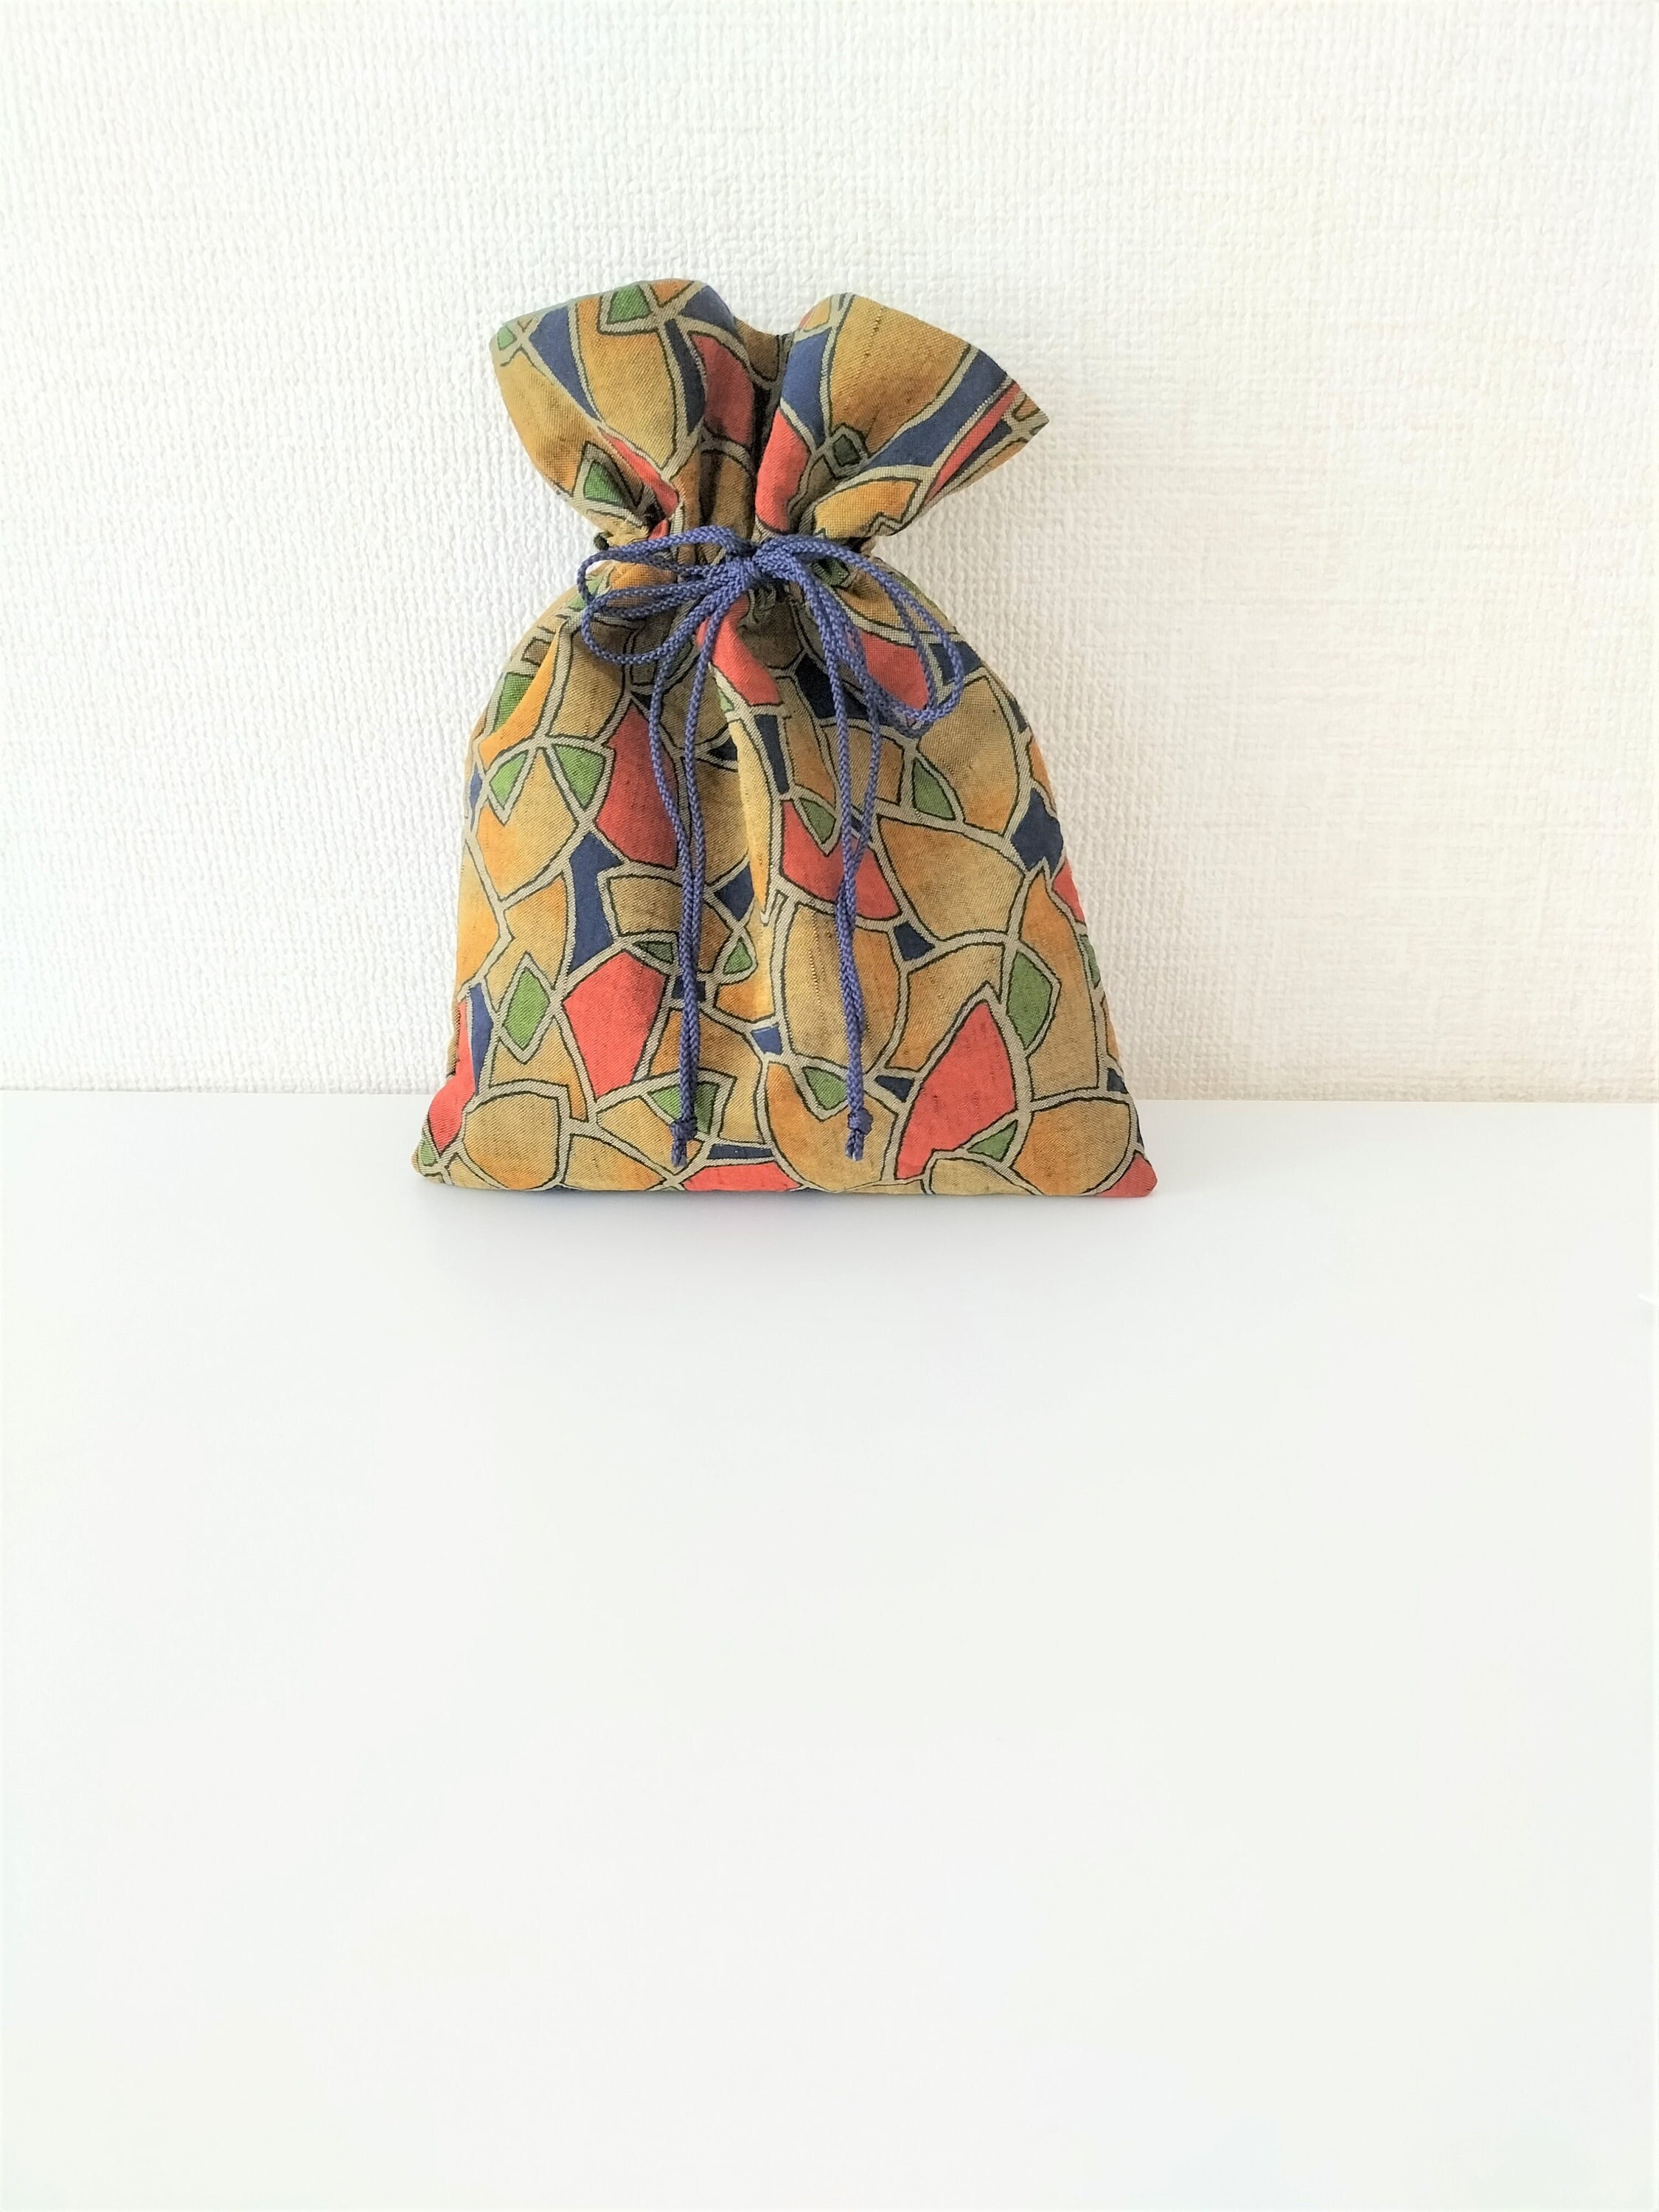 Kinchaku Bag, Drawstring Bag, Hand Bag, Kimono Bag, Vintage Kimono Remake, Japanese Bag, Gift for Friends